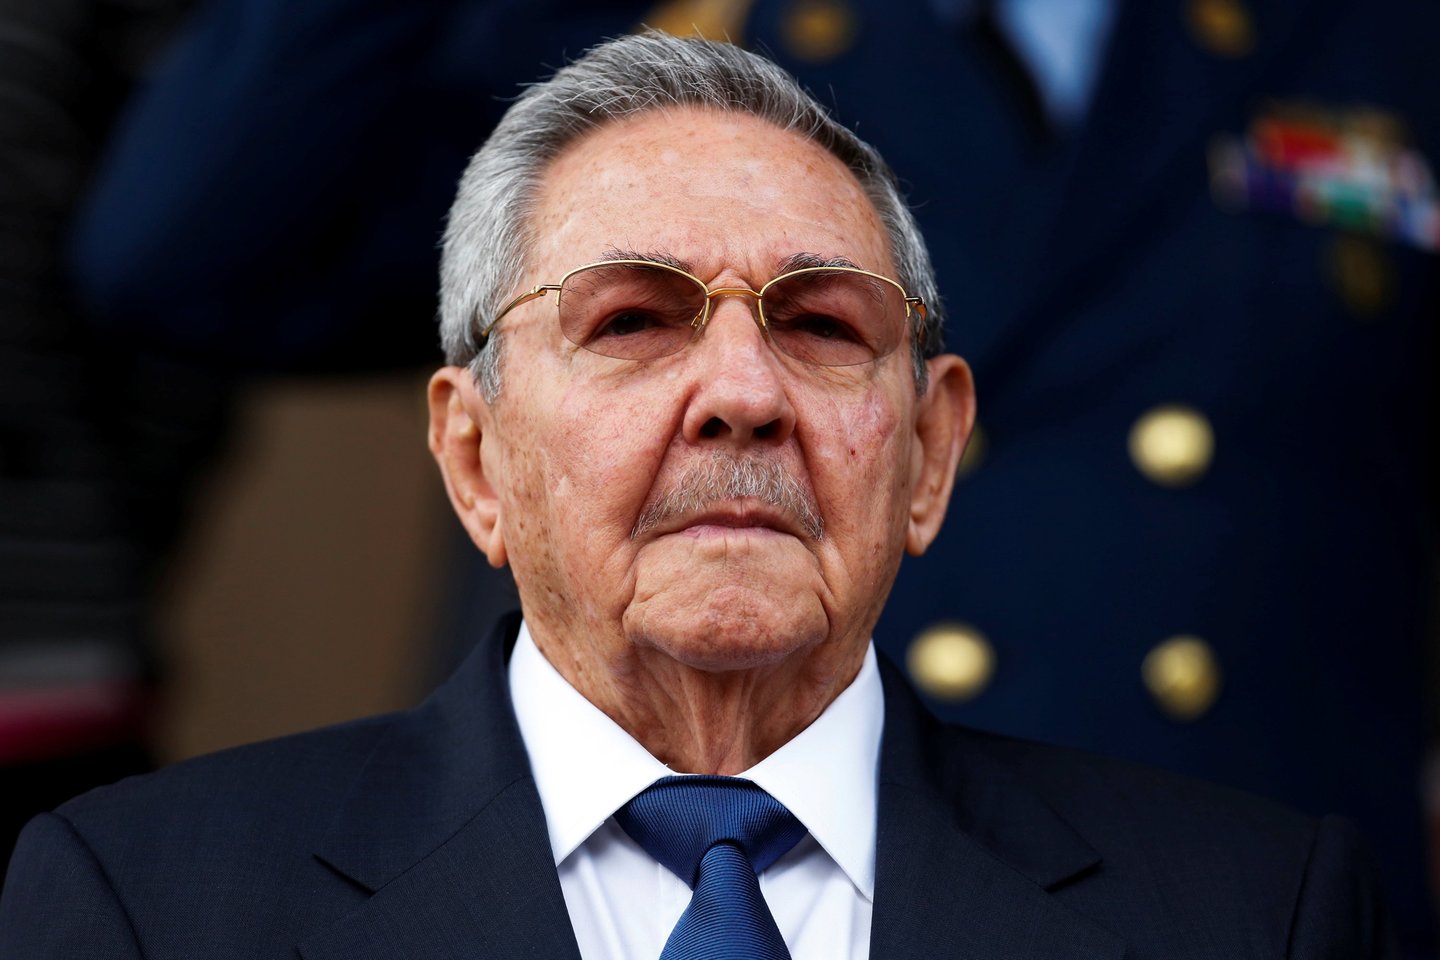  Raulis Castro atsistatydino iš Kubos komunistų partijos vadovo pareigų.  <br> Reuters/Scanpix nuotr.